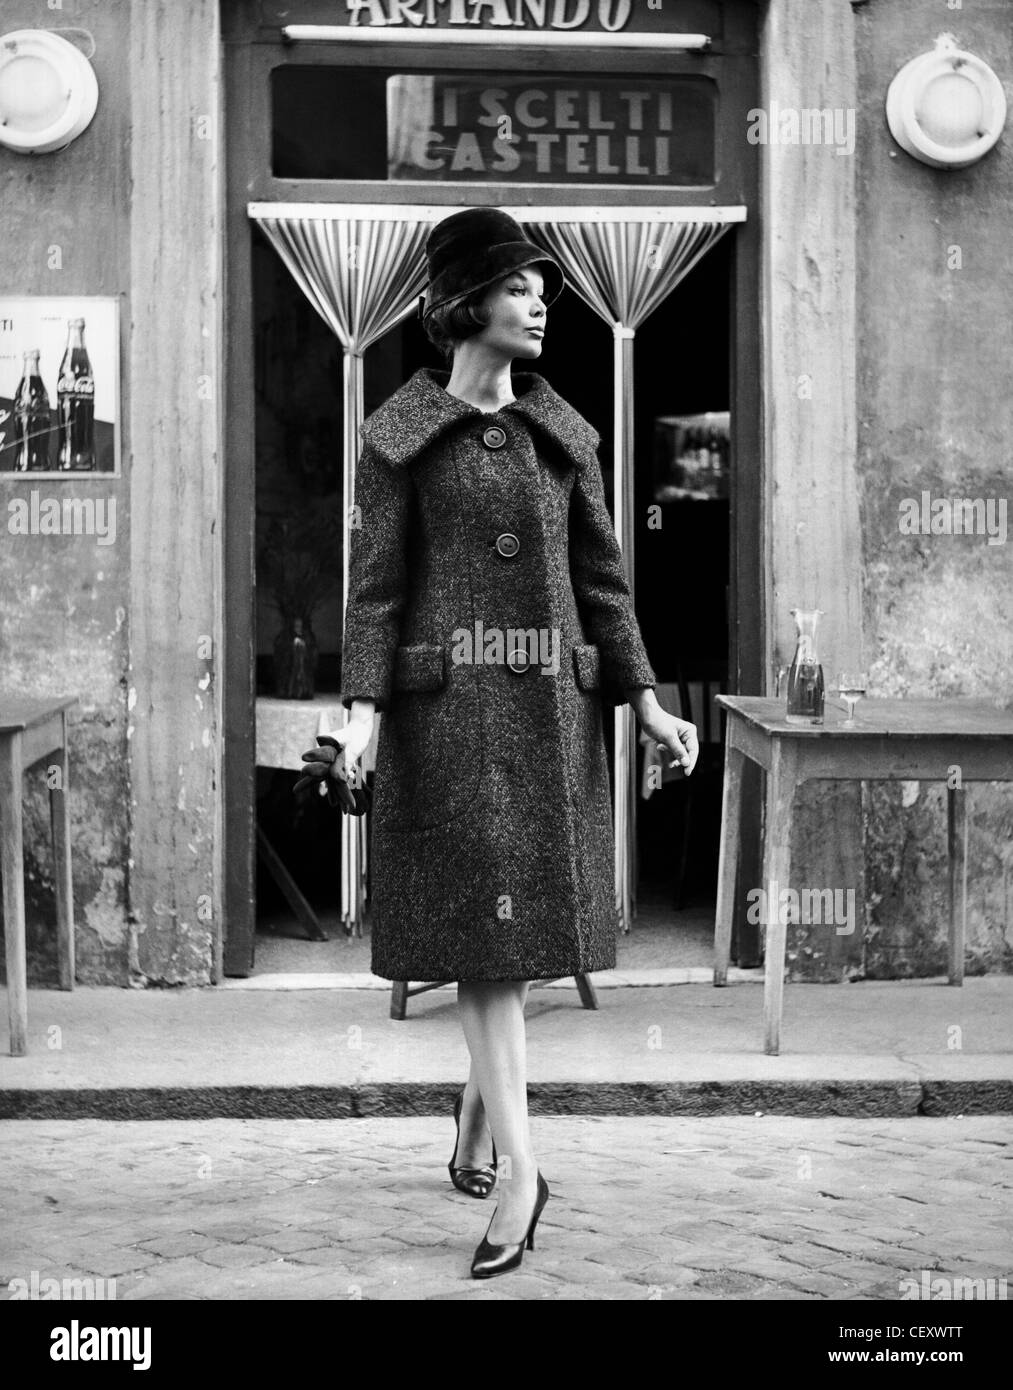 Luciani weiblich Tweed Mantel mit breitem Revers, Cloche Hut und Gericht Schuhe; stehend vor einem Geschäft in Rom Elsa Haertter Stockfoto